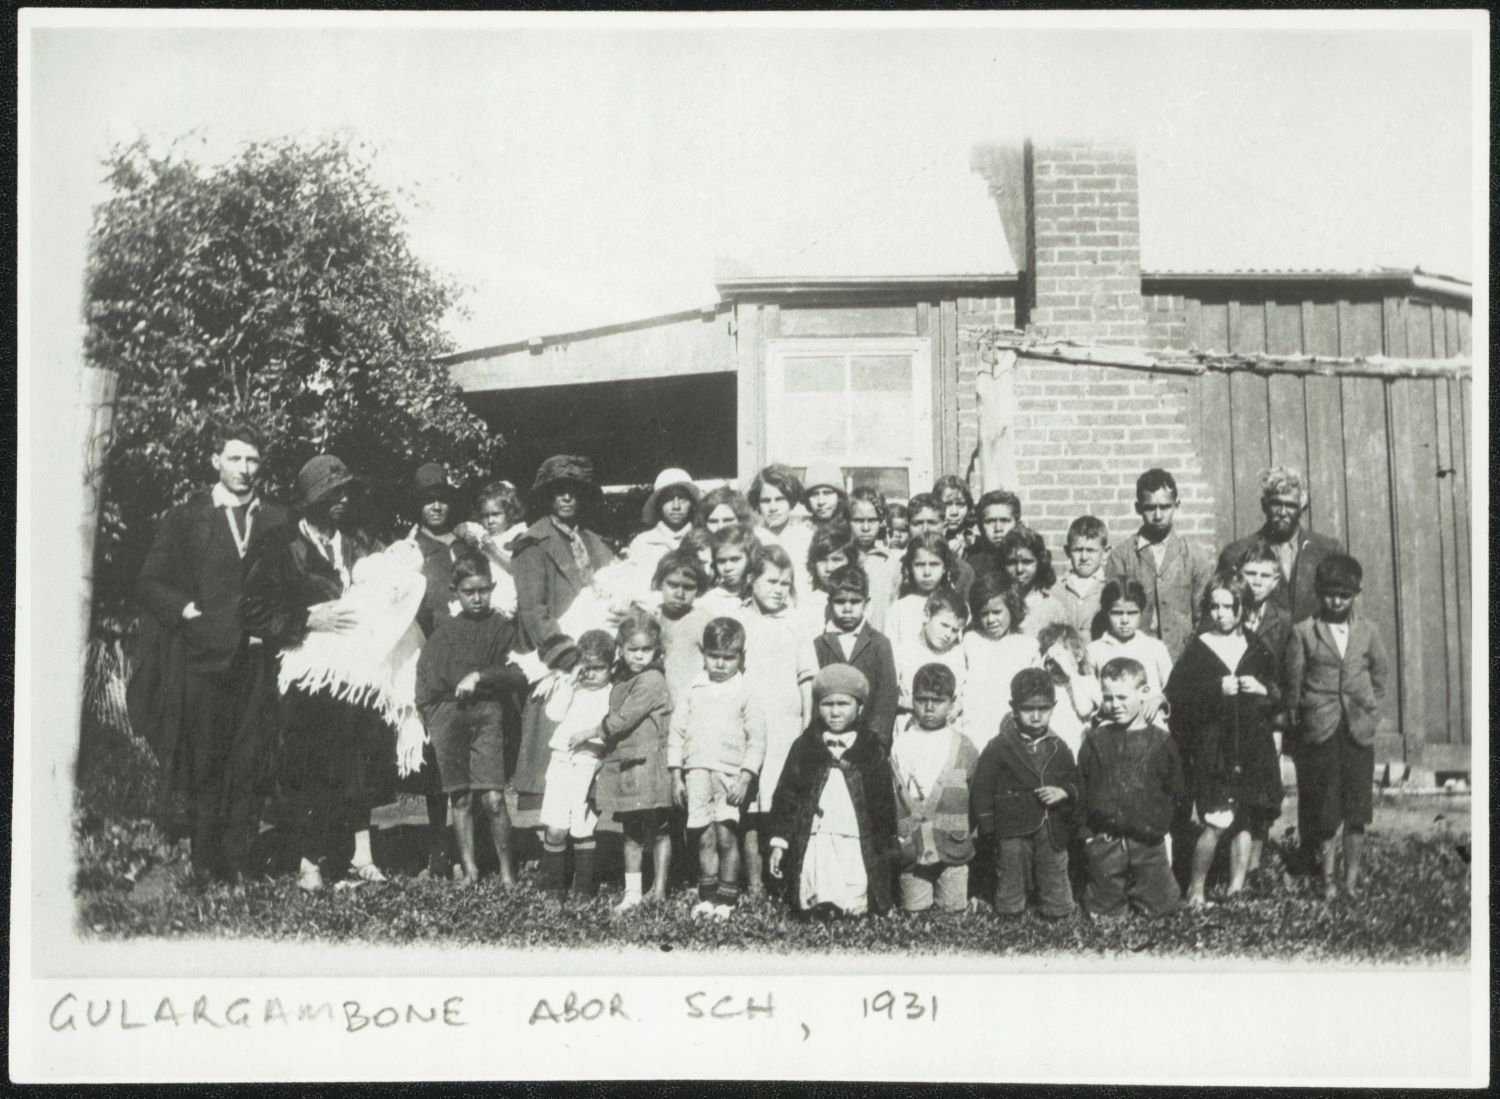 Class photo from Gulargambone Aboriginal school in 1931